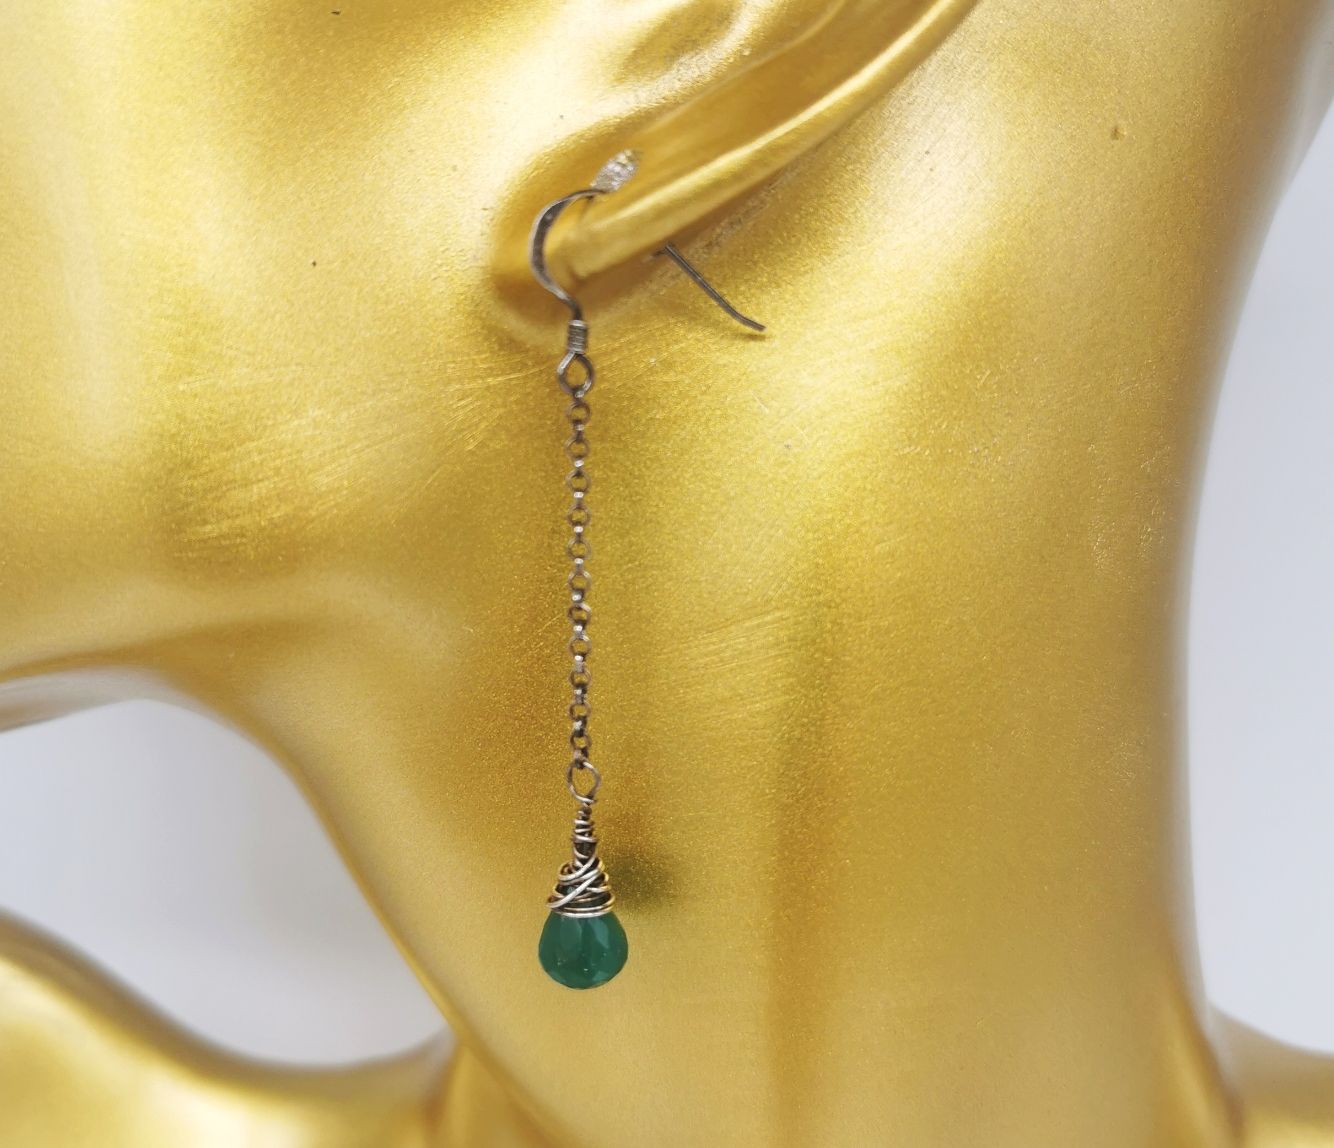 Green Onyx Faceted Teardrops Long Dangle Earrings - Oxidized 925 Sterling Silver